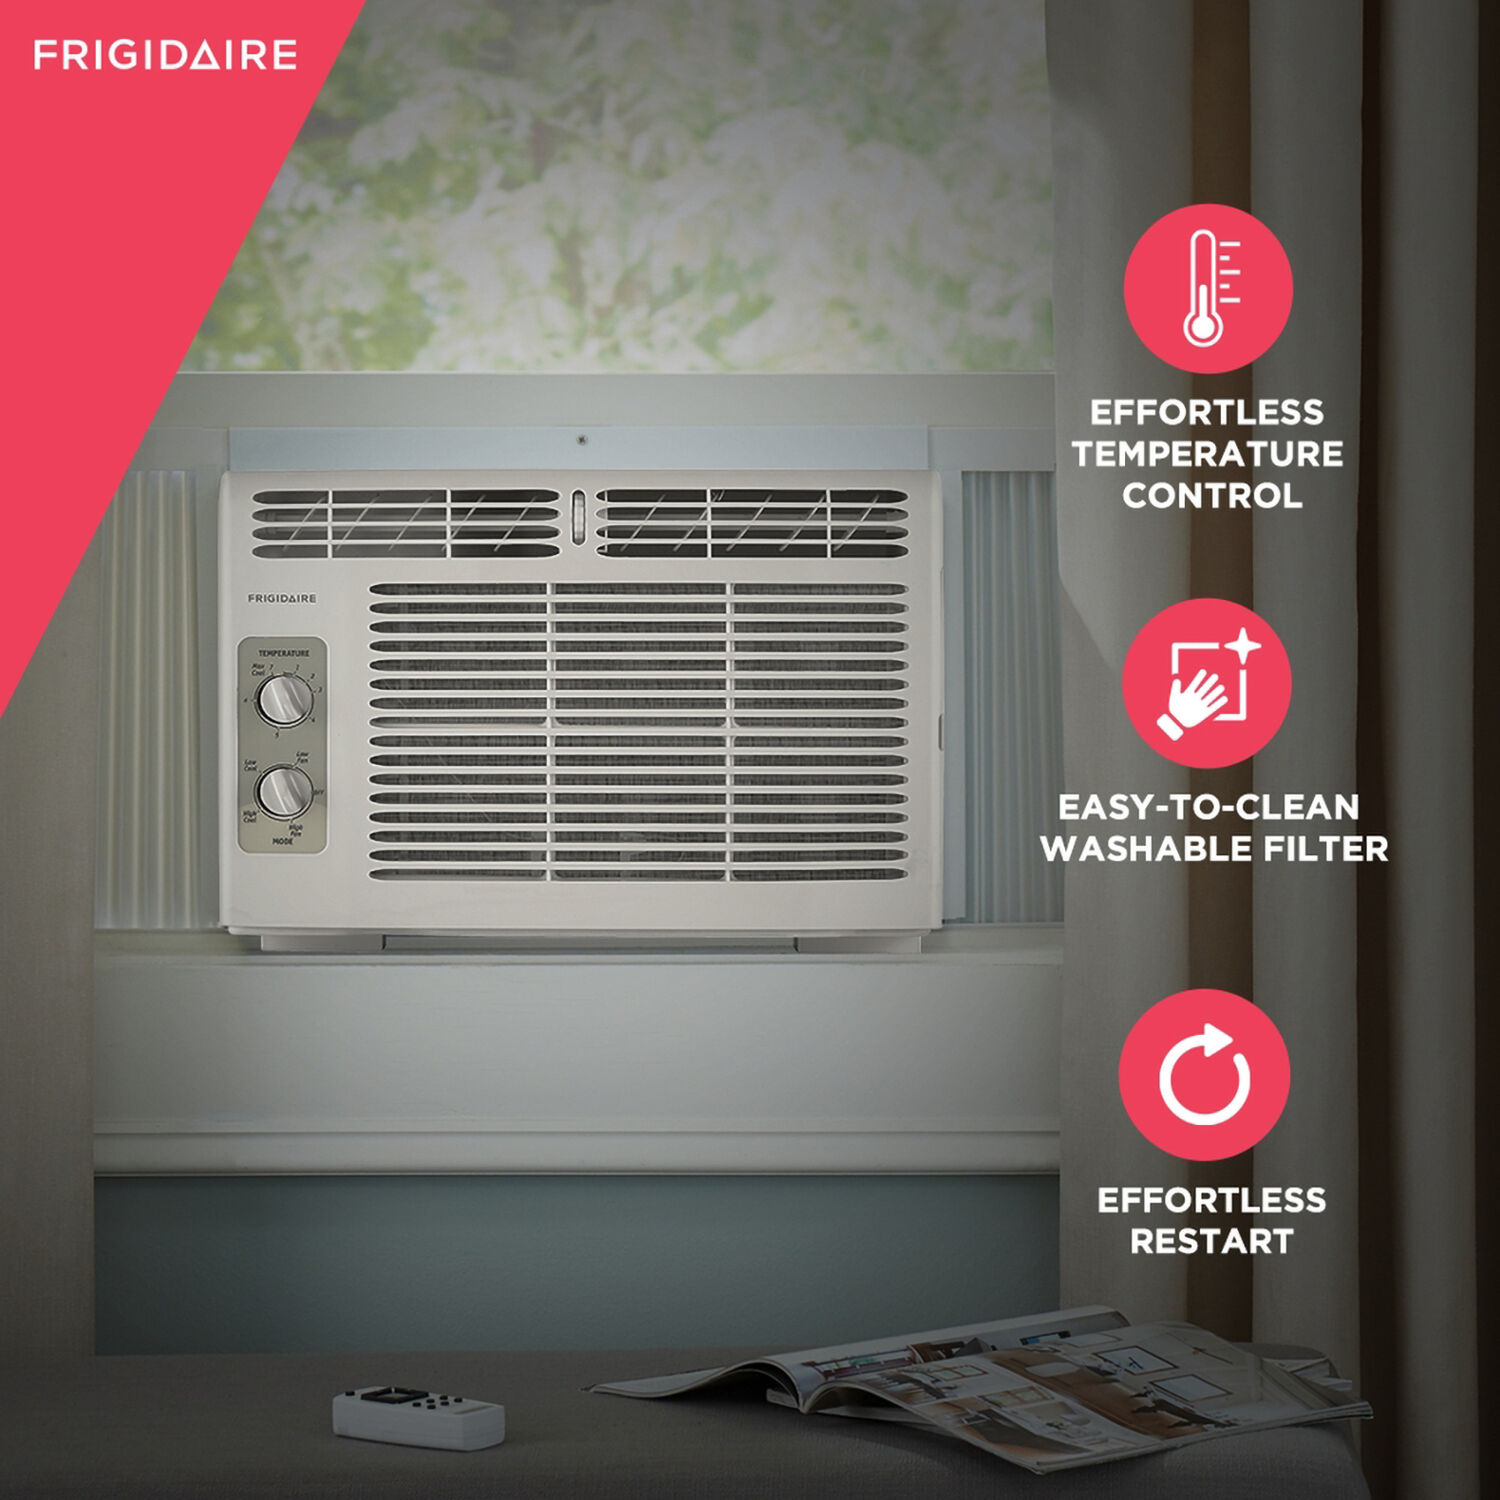 Frigidaire 5,000 BTU 115-Volt Window Air Conditioner, White, FFRA051WAE - image 5 of 8